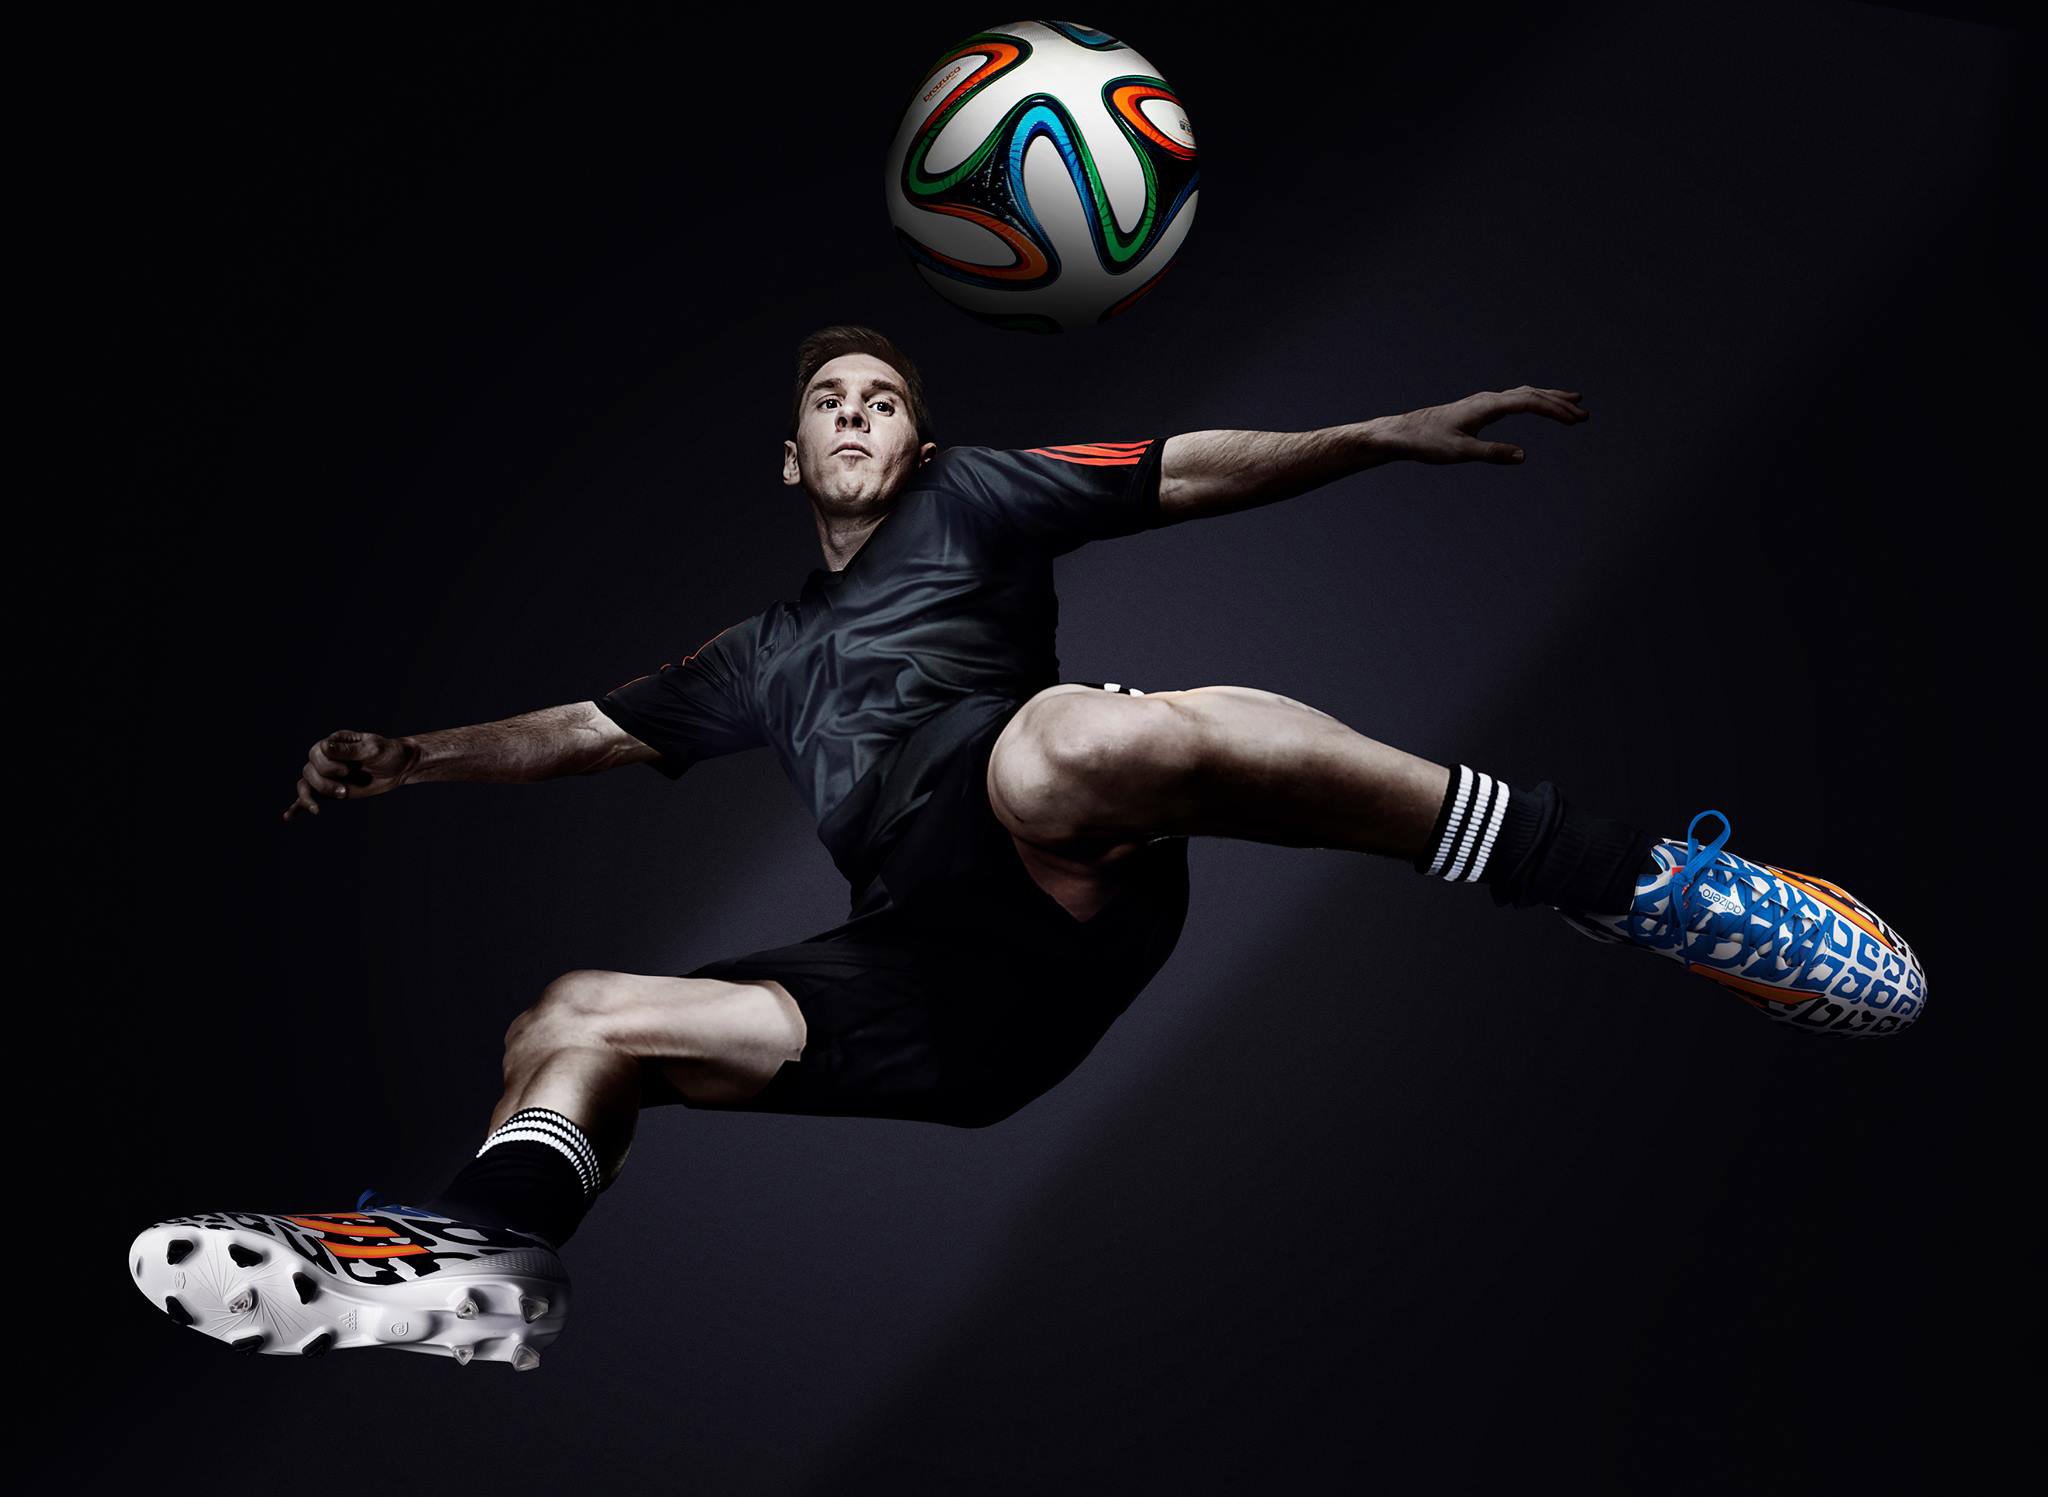 Leo Messi Argentina Adidas 2014 FIFA World Cup Wallpaper. TEXtalks. Let's Talk Textiles